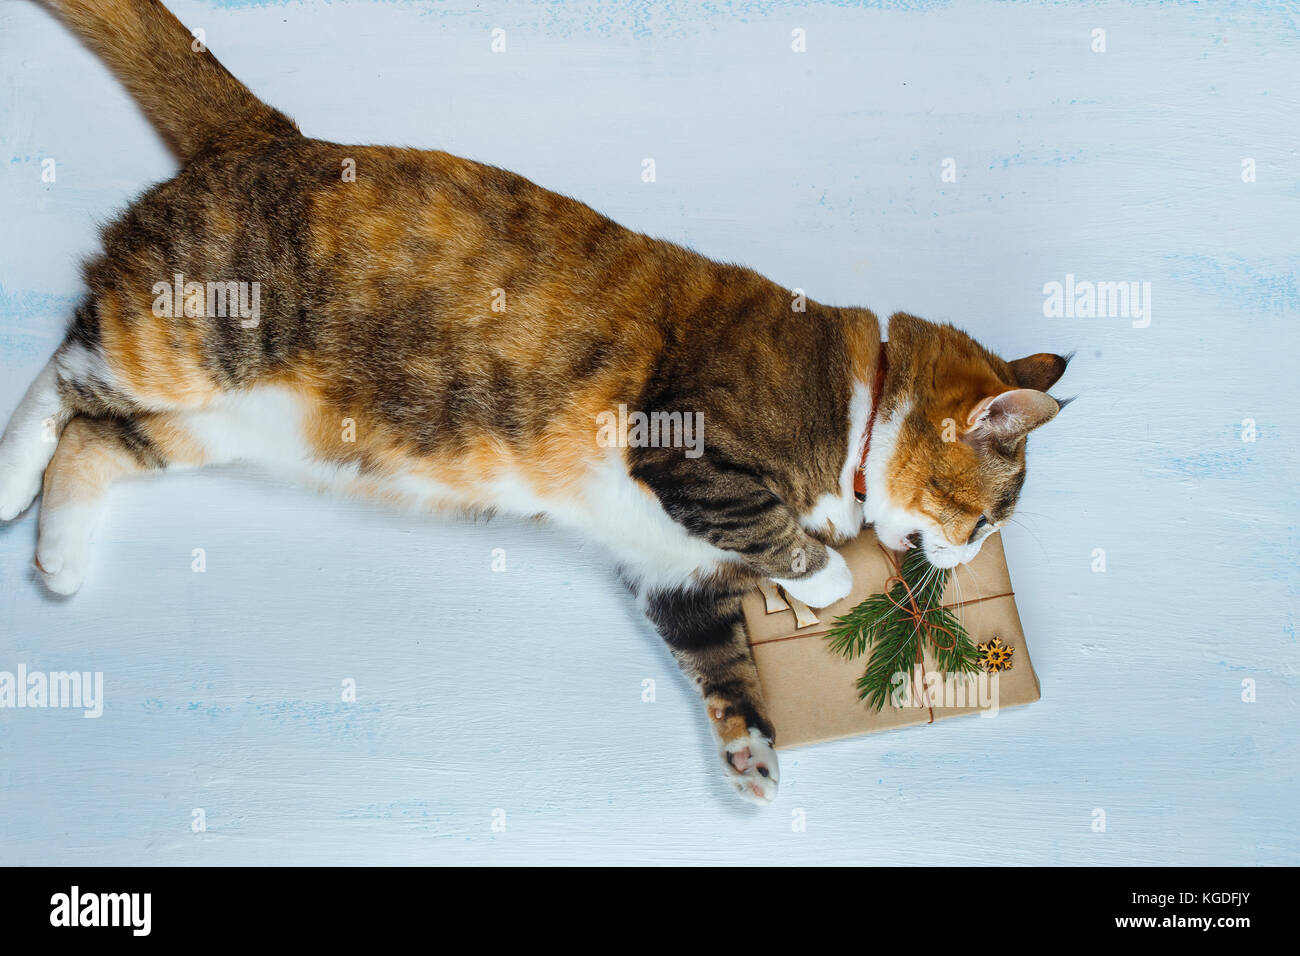 Die Katze will ein Weihnachtsgeschenk zu öffnen. Stockfoto